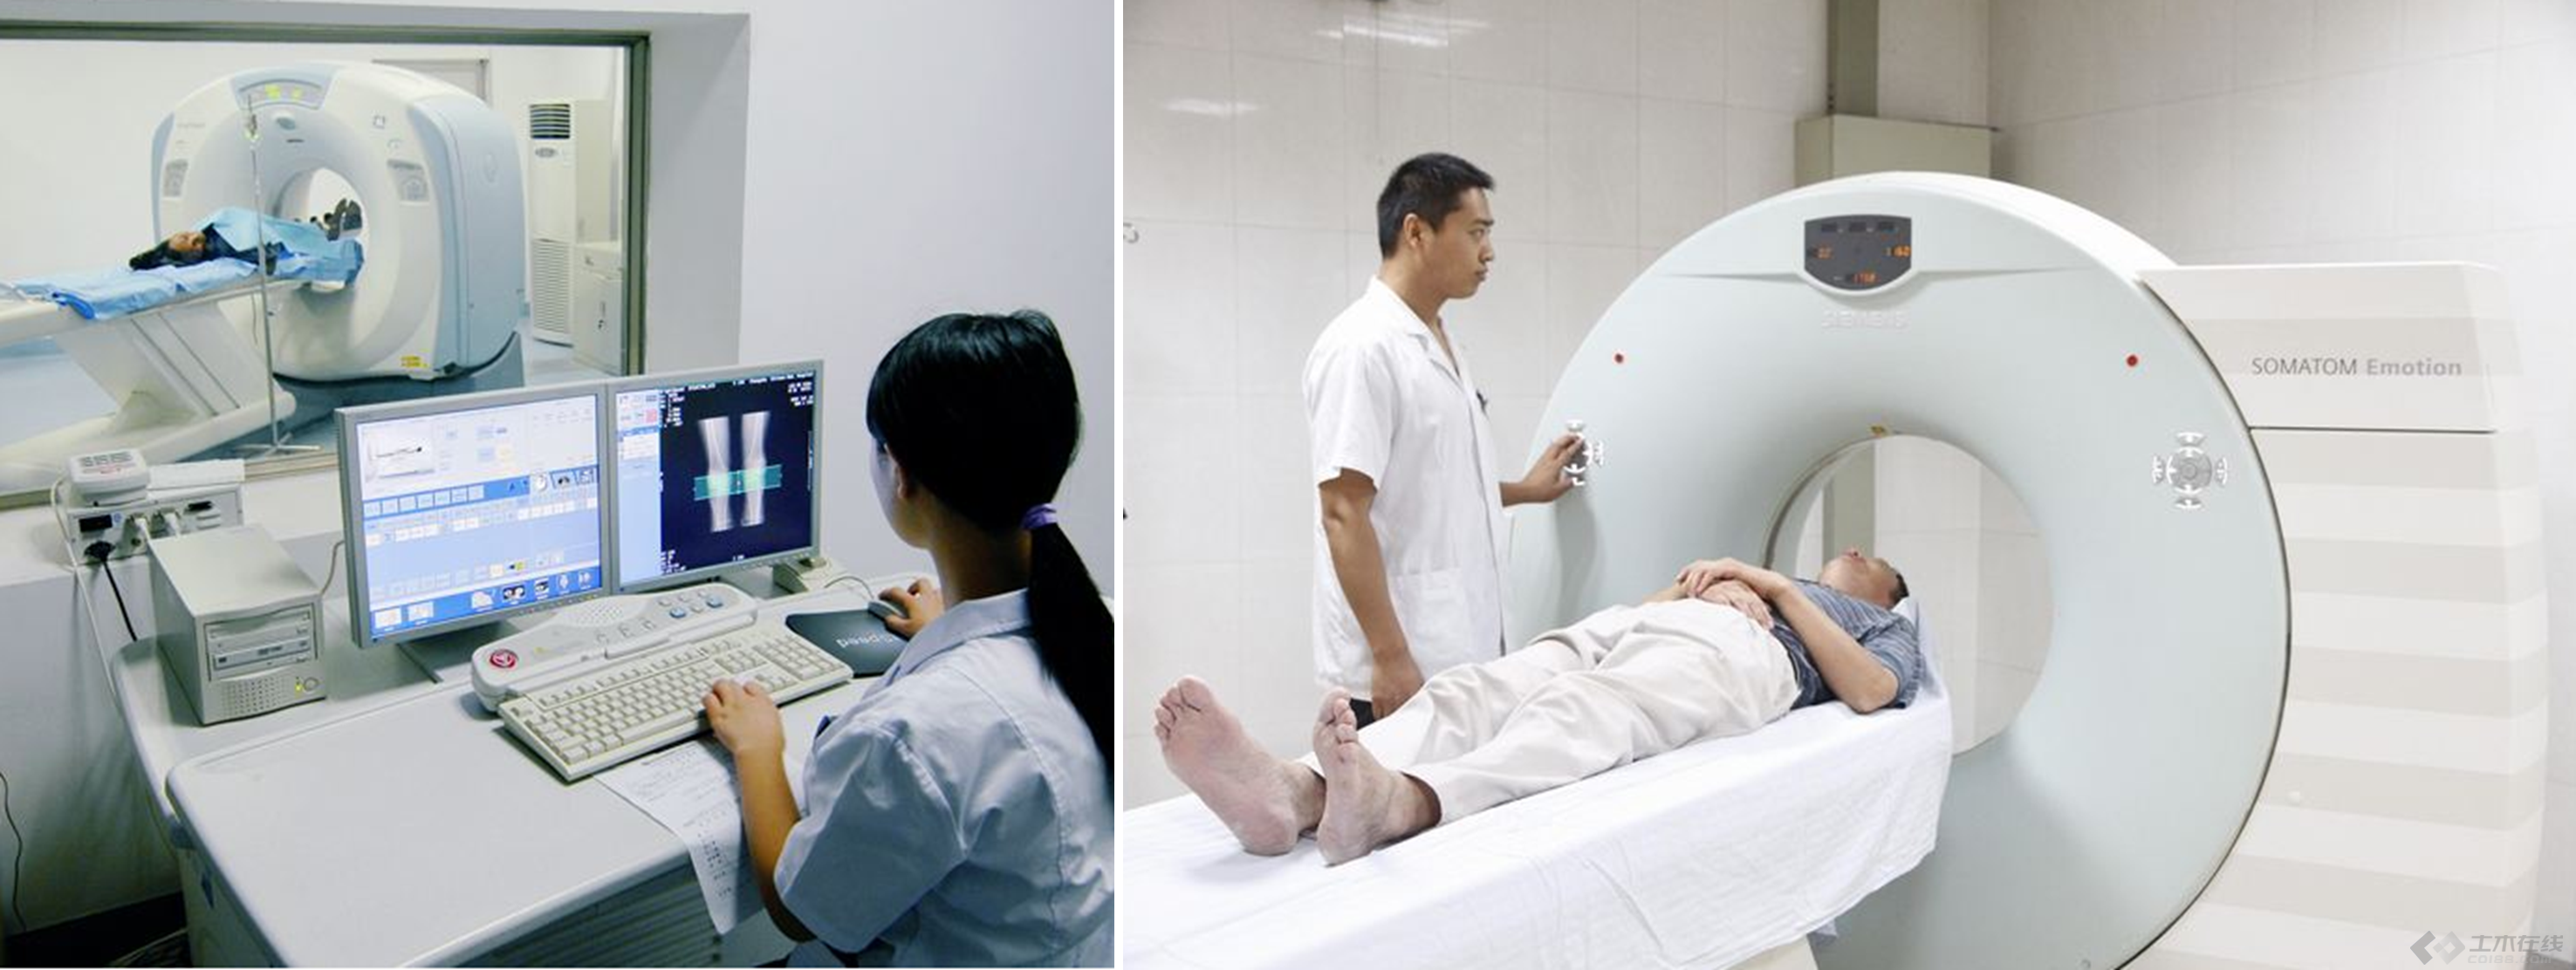 汉中市中心医院成功开展立体定向放射治疗新技术 - 中国核技术网